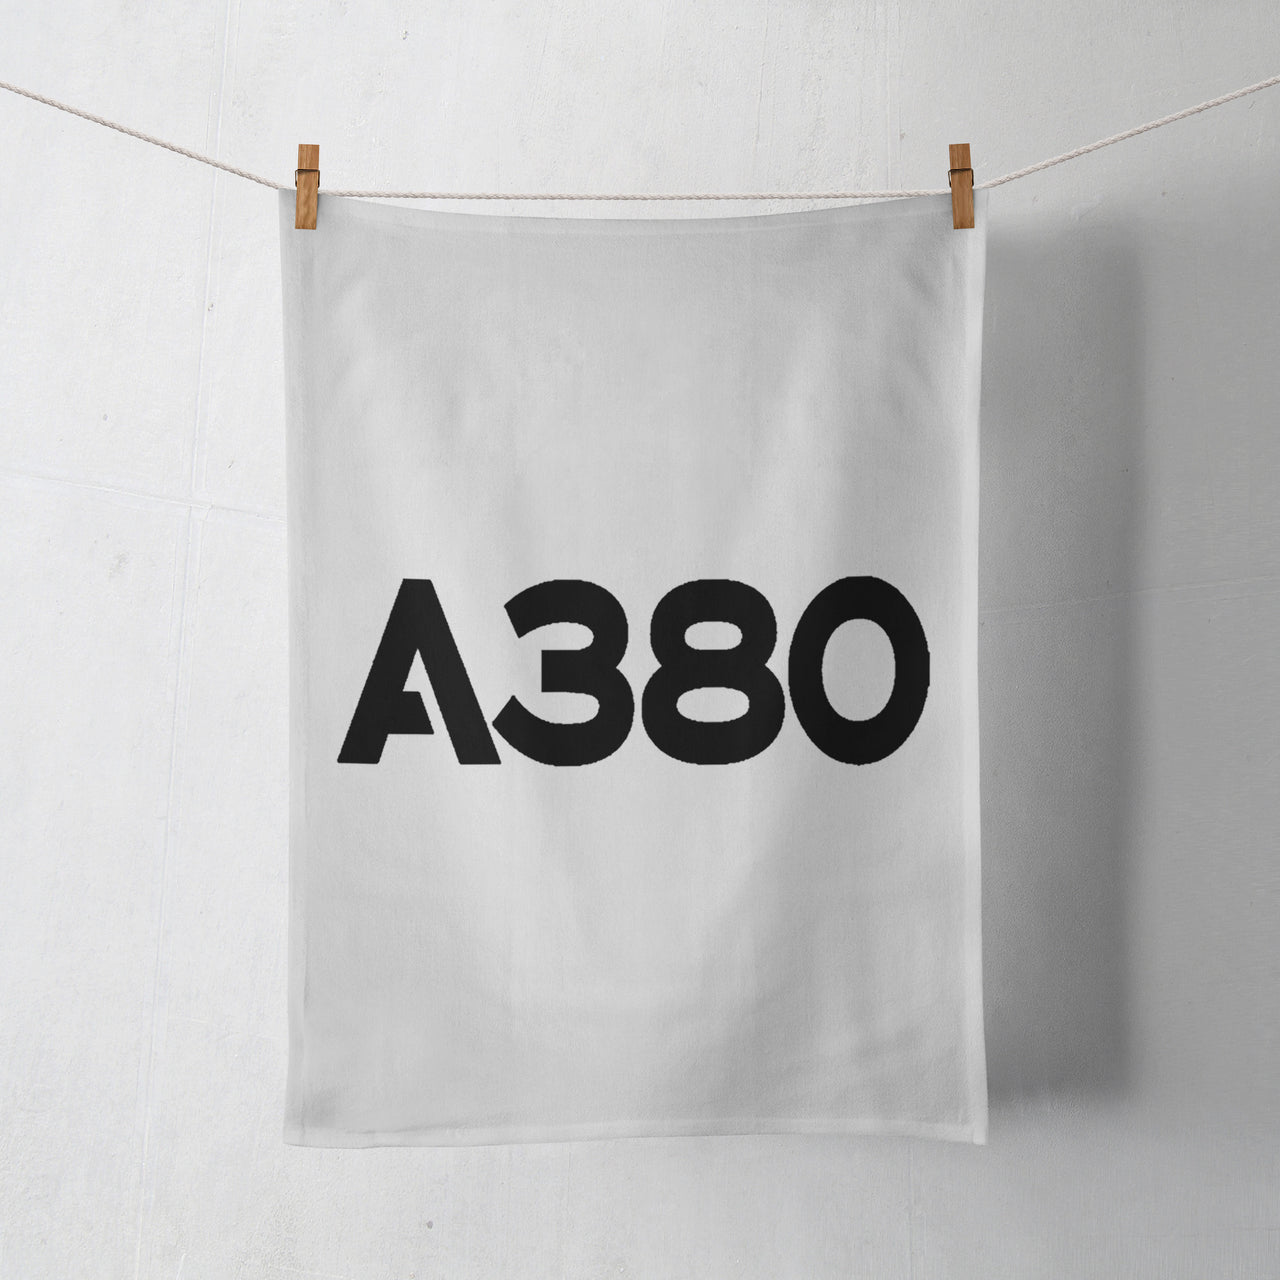 A380 Flat Text Designed Towels